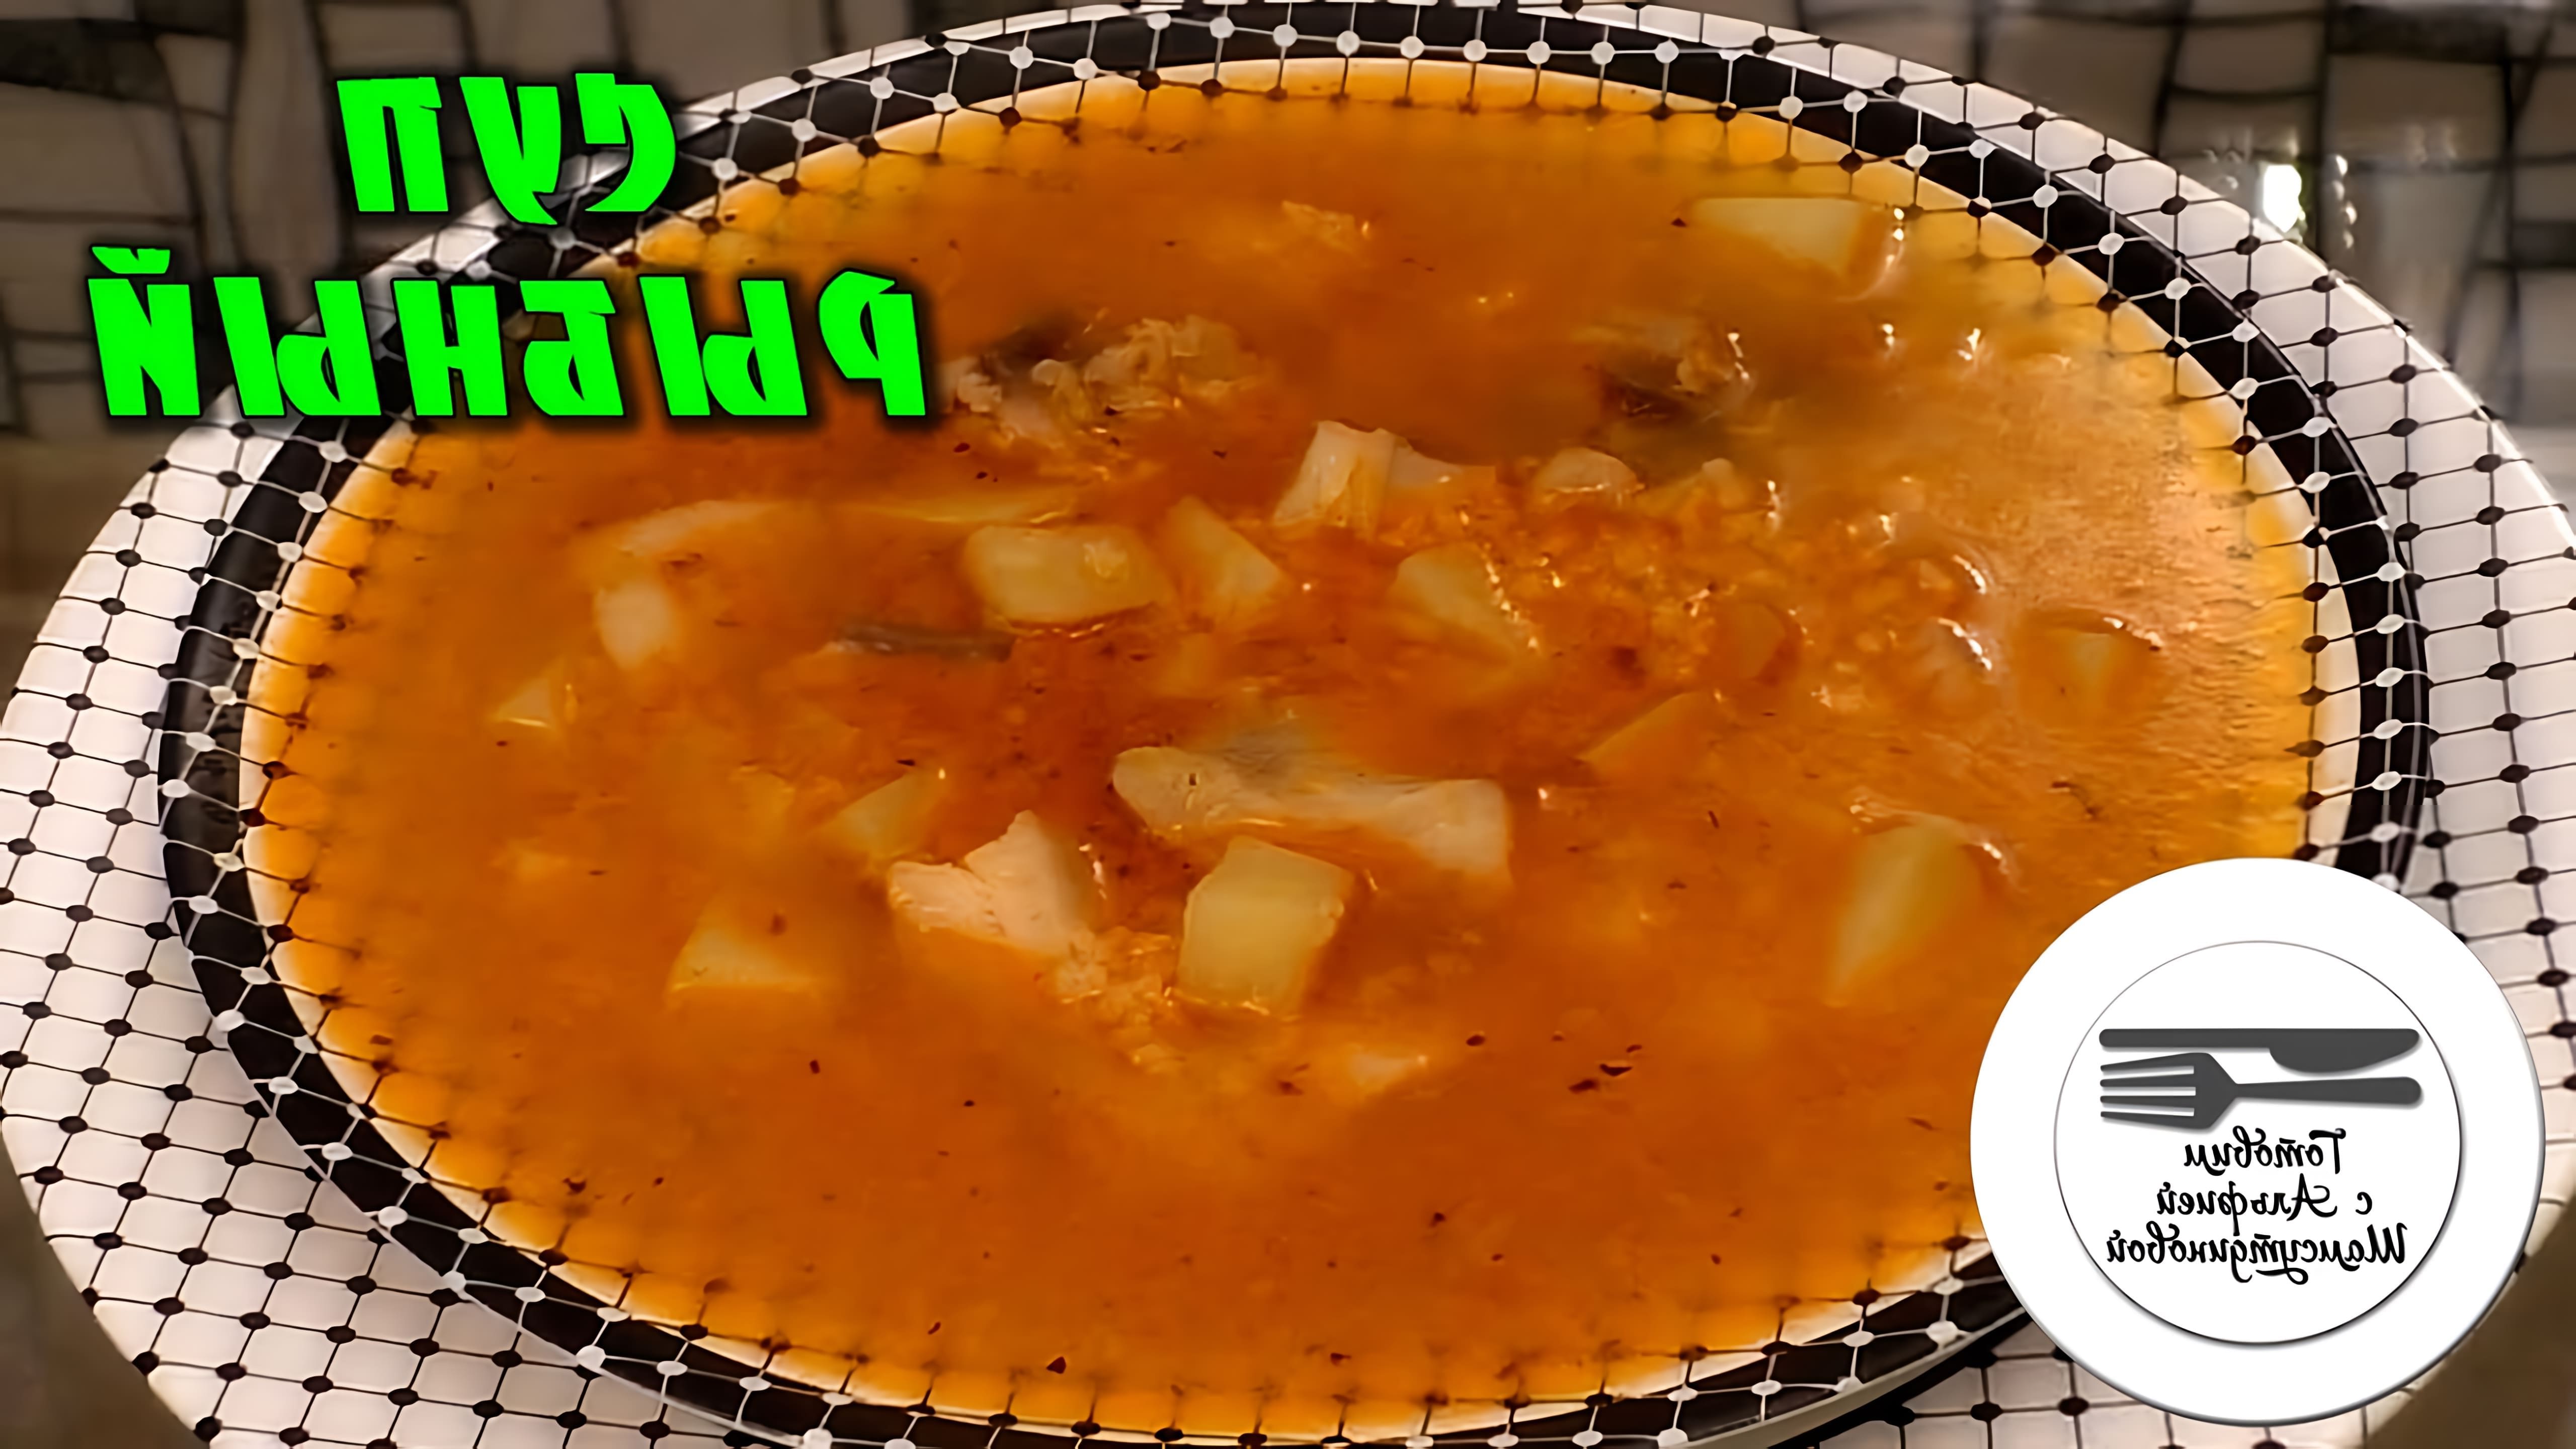 В этом видео демонстрируется рецепт рыбного супа из тилапии